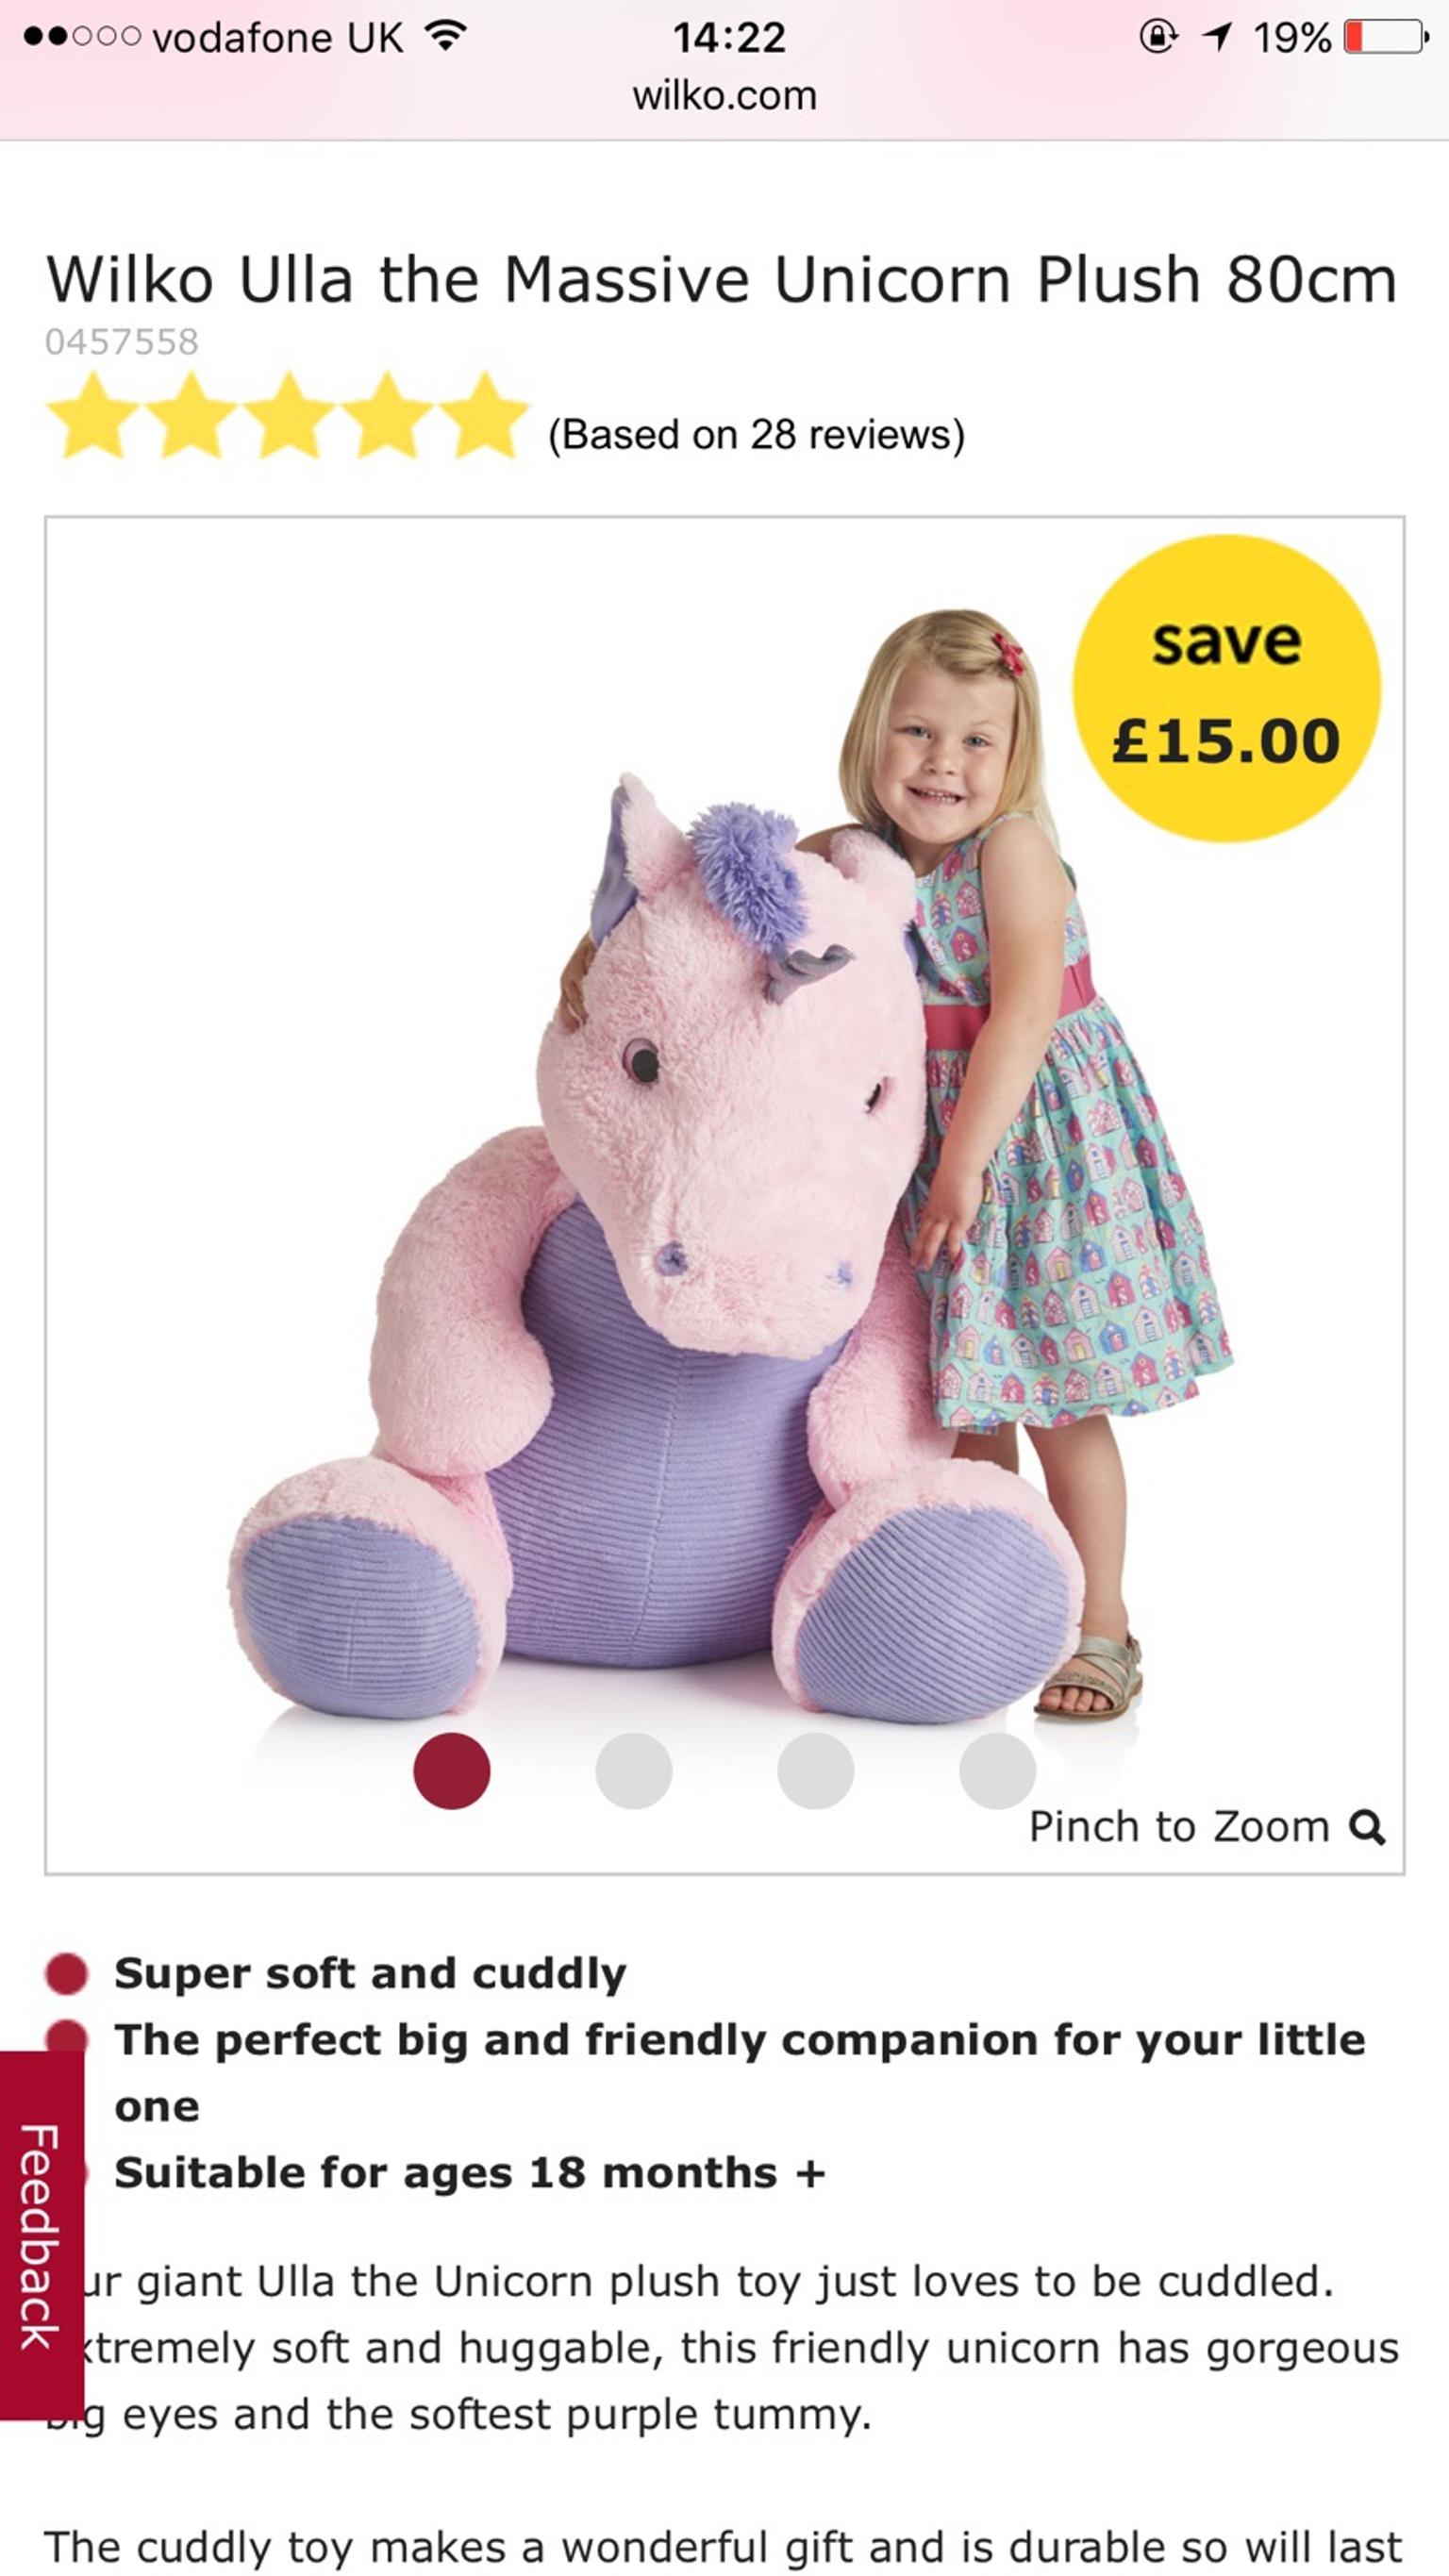 giant unicorn teddy wilko